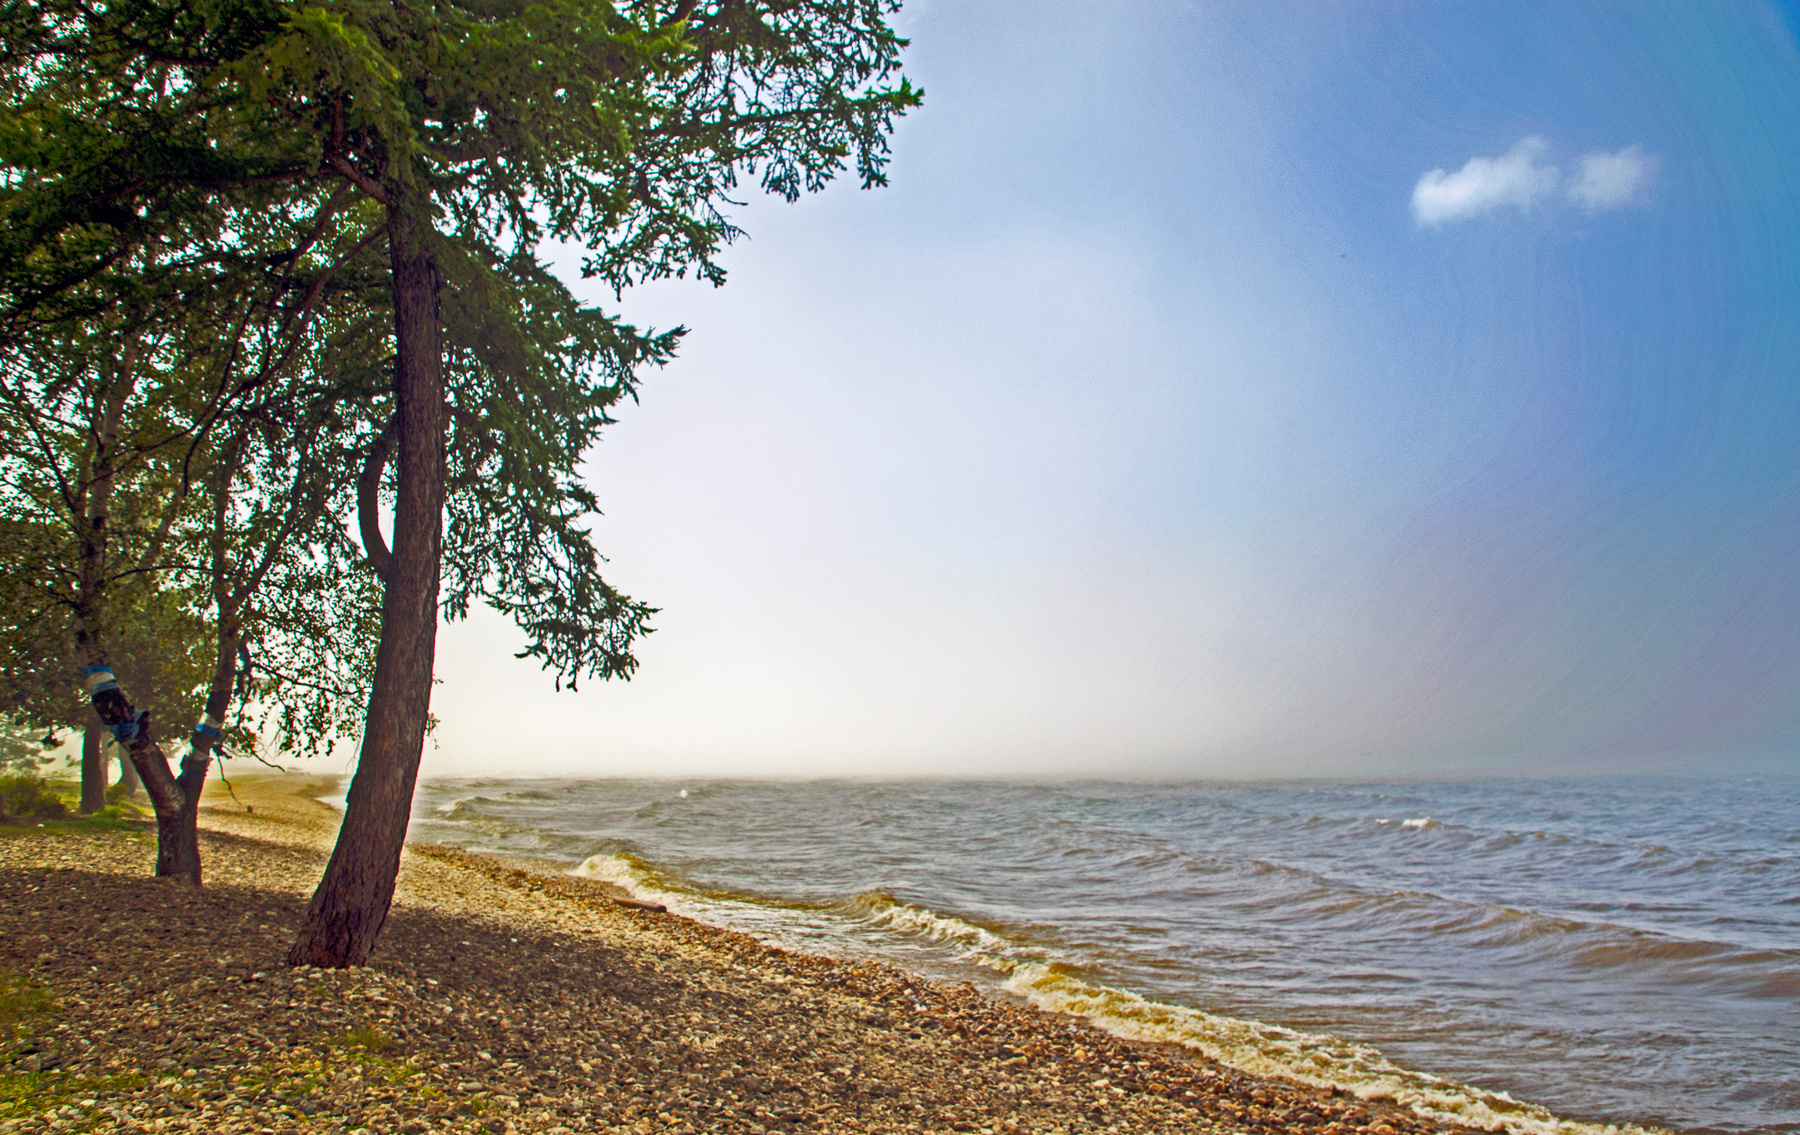 Байкал в Заречье бурятия байкал волна туман природа пейаж озеро лето